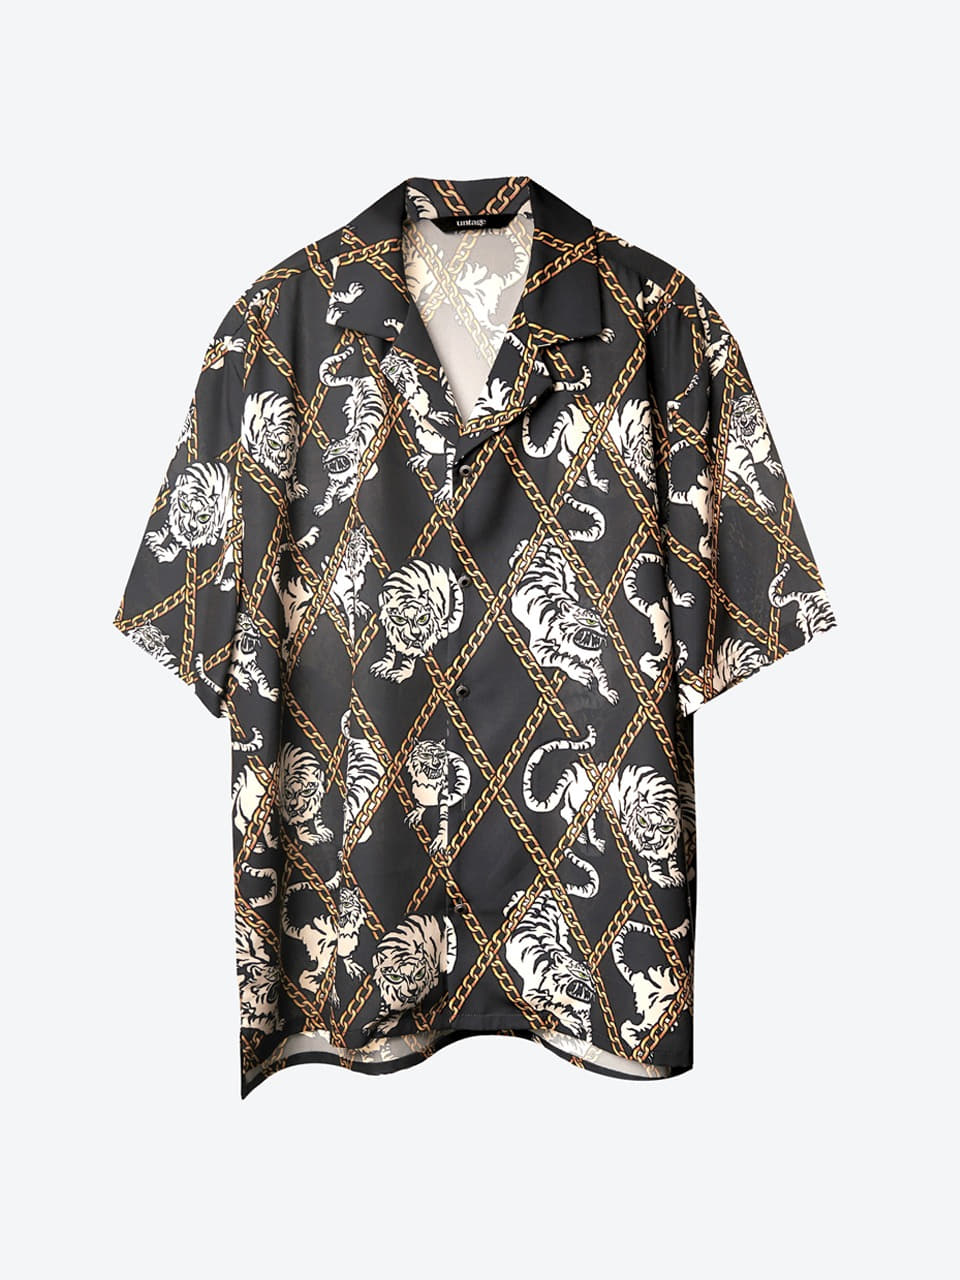 Tiger-Printed Bowling Shirt (charcoal)